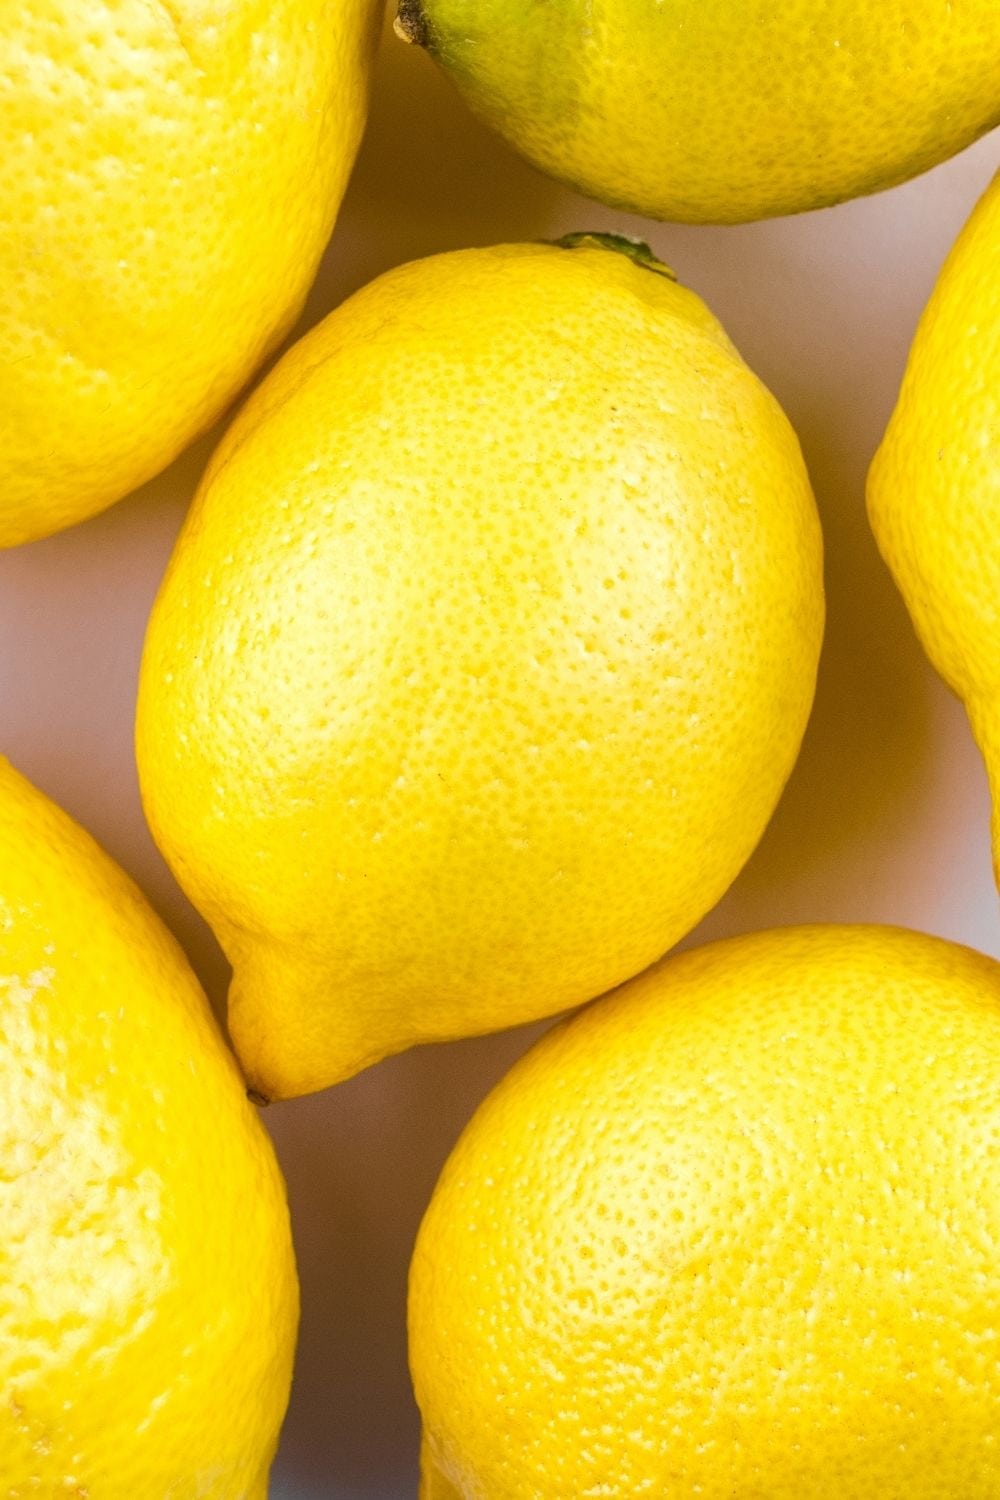 fresh lemons can mimic lemongrass in dishes